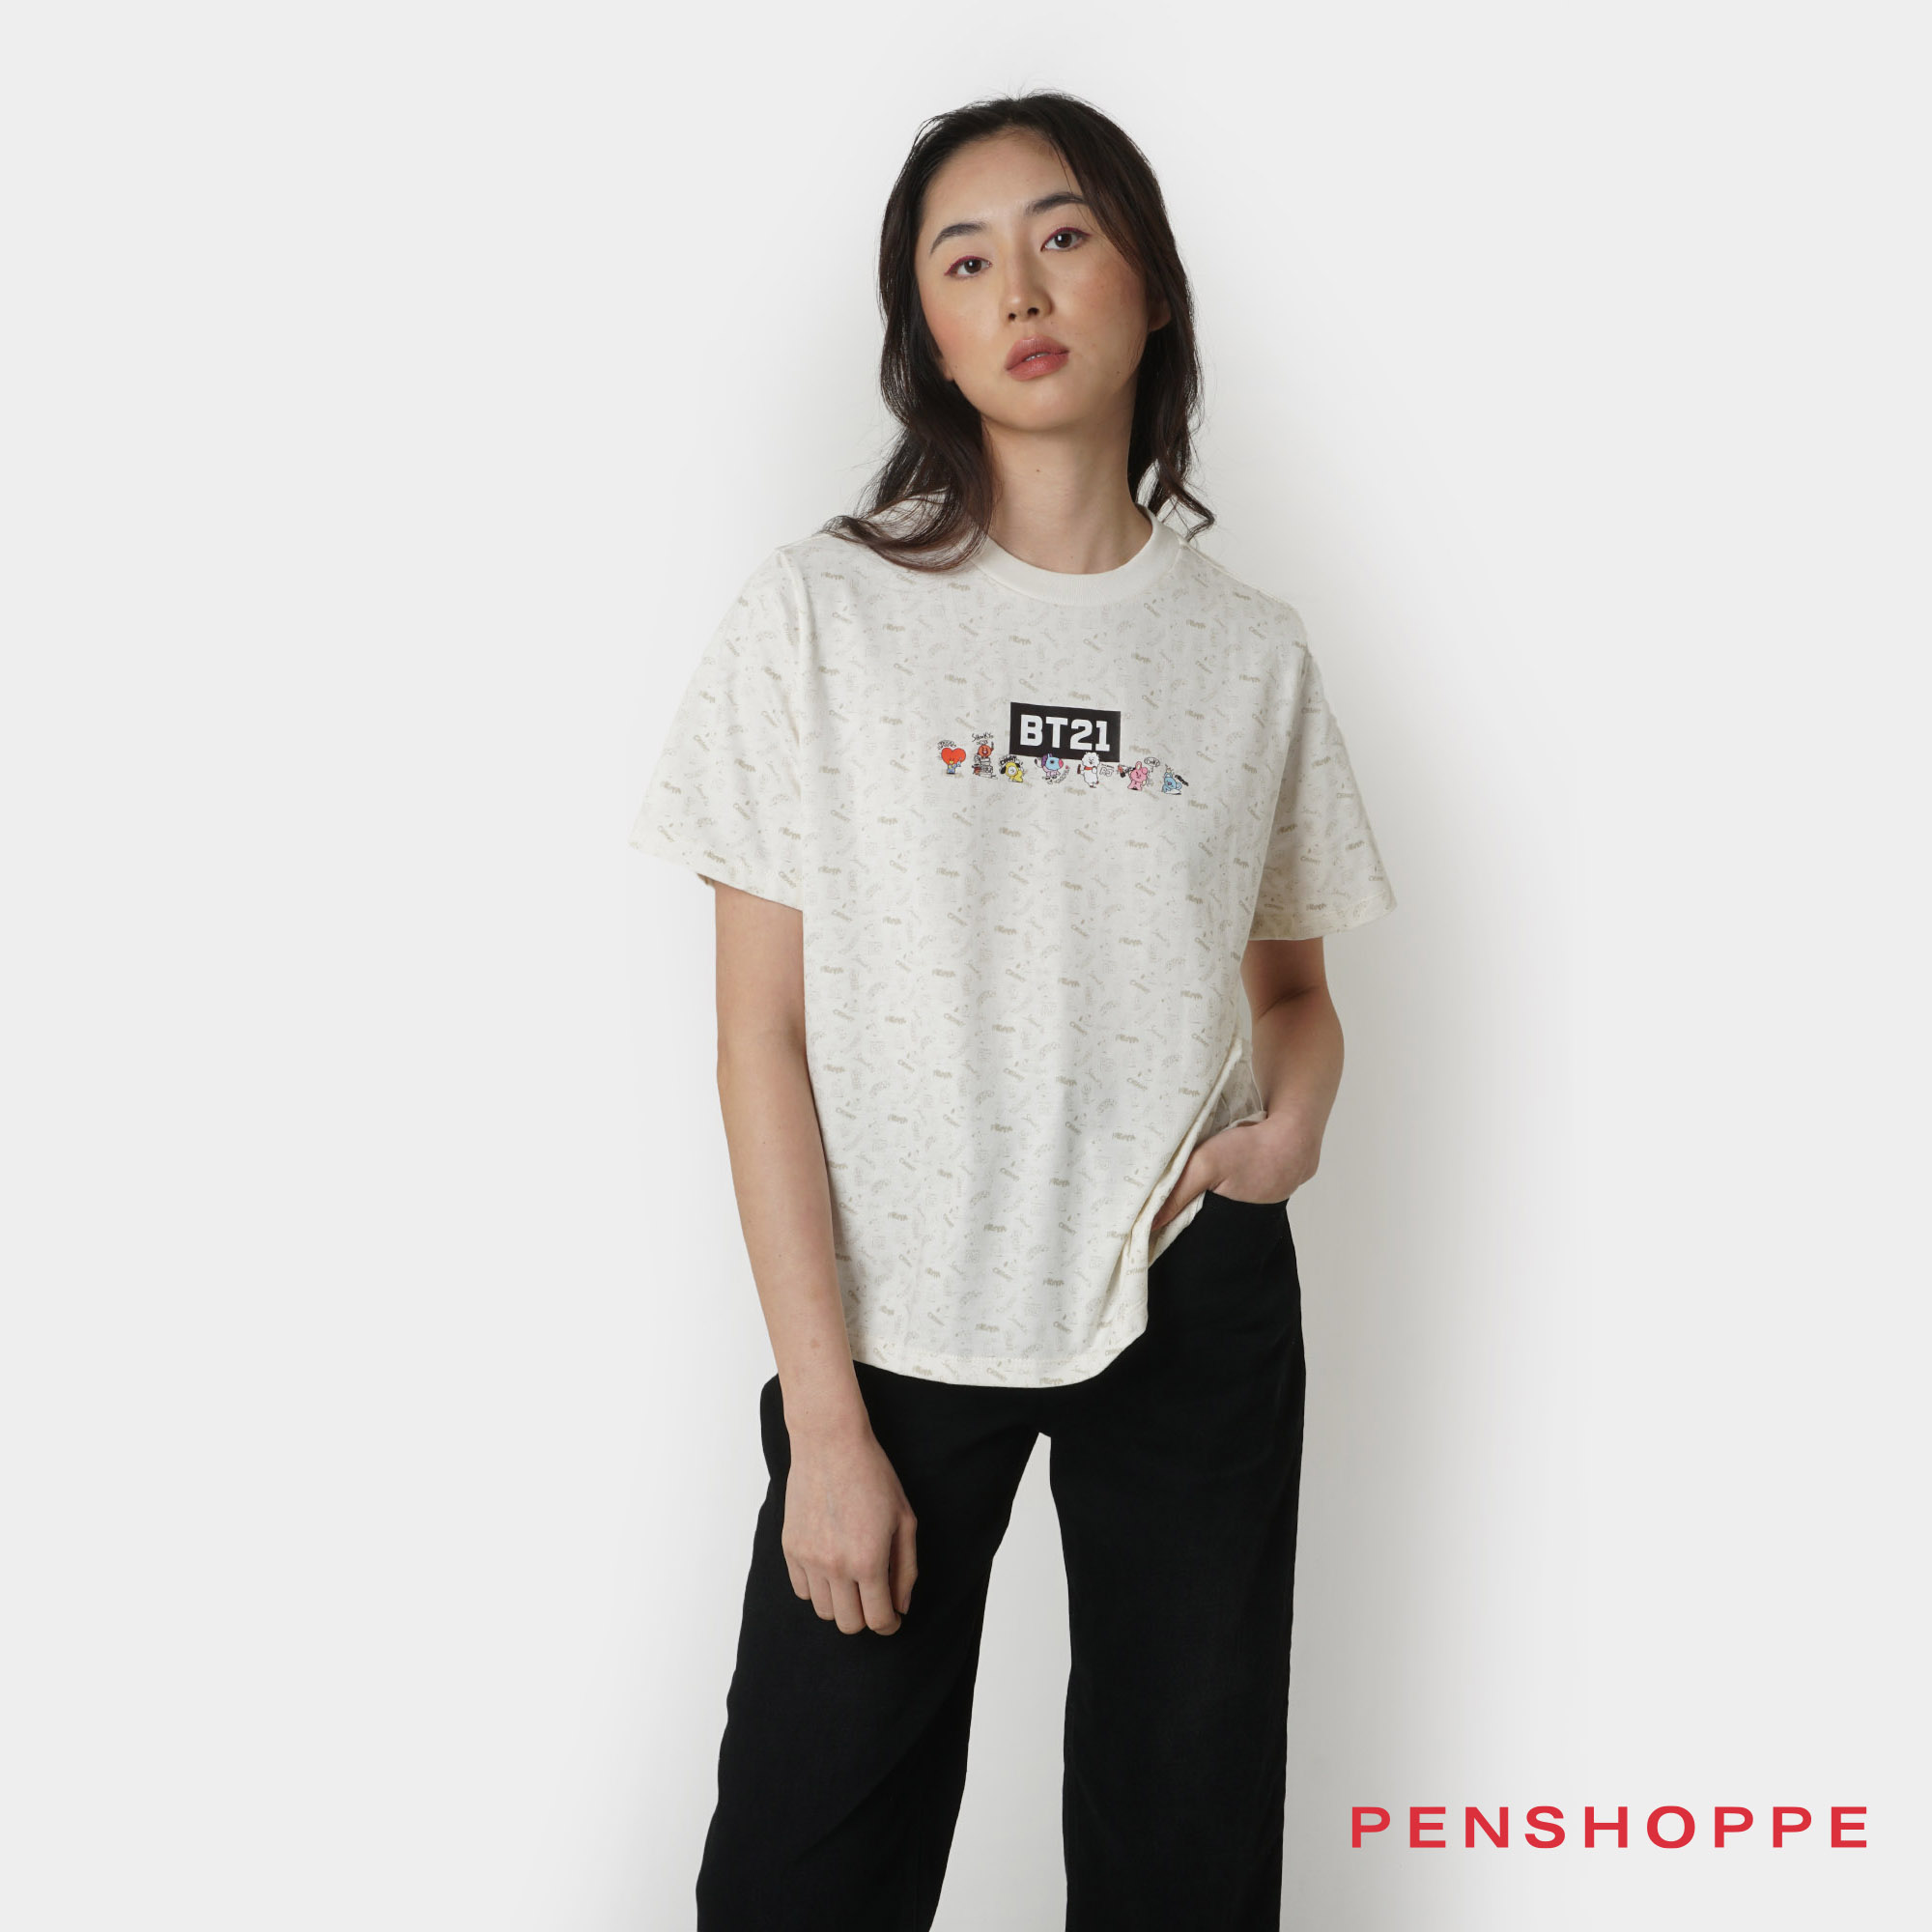 penshoppe t shirt plain white